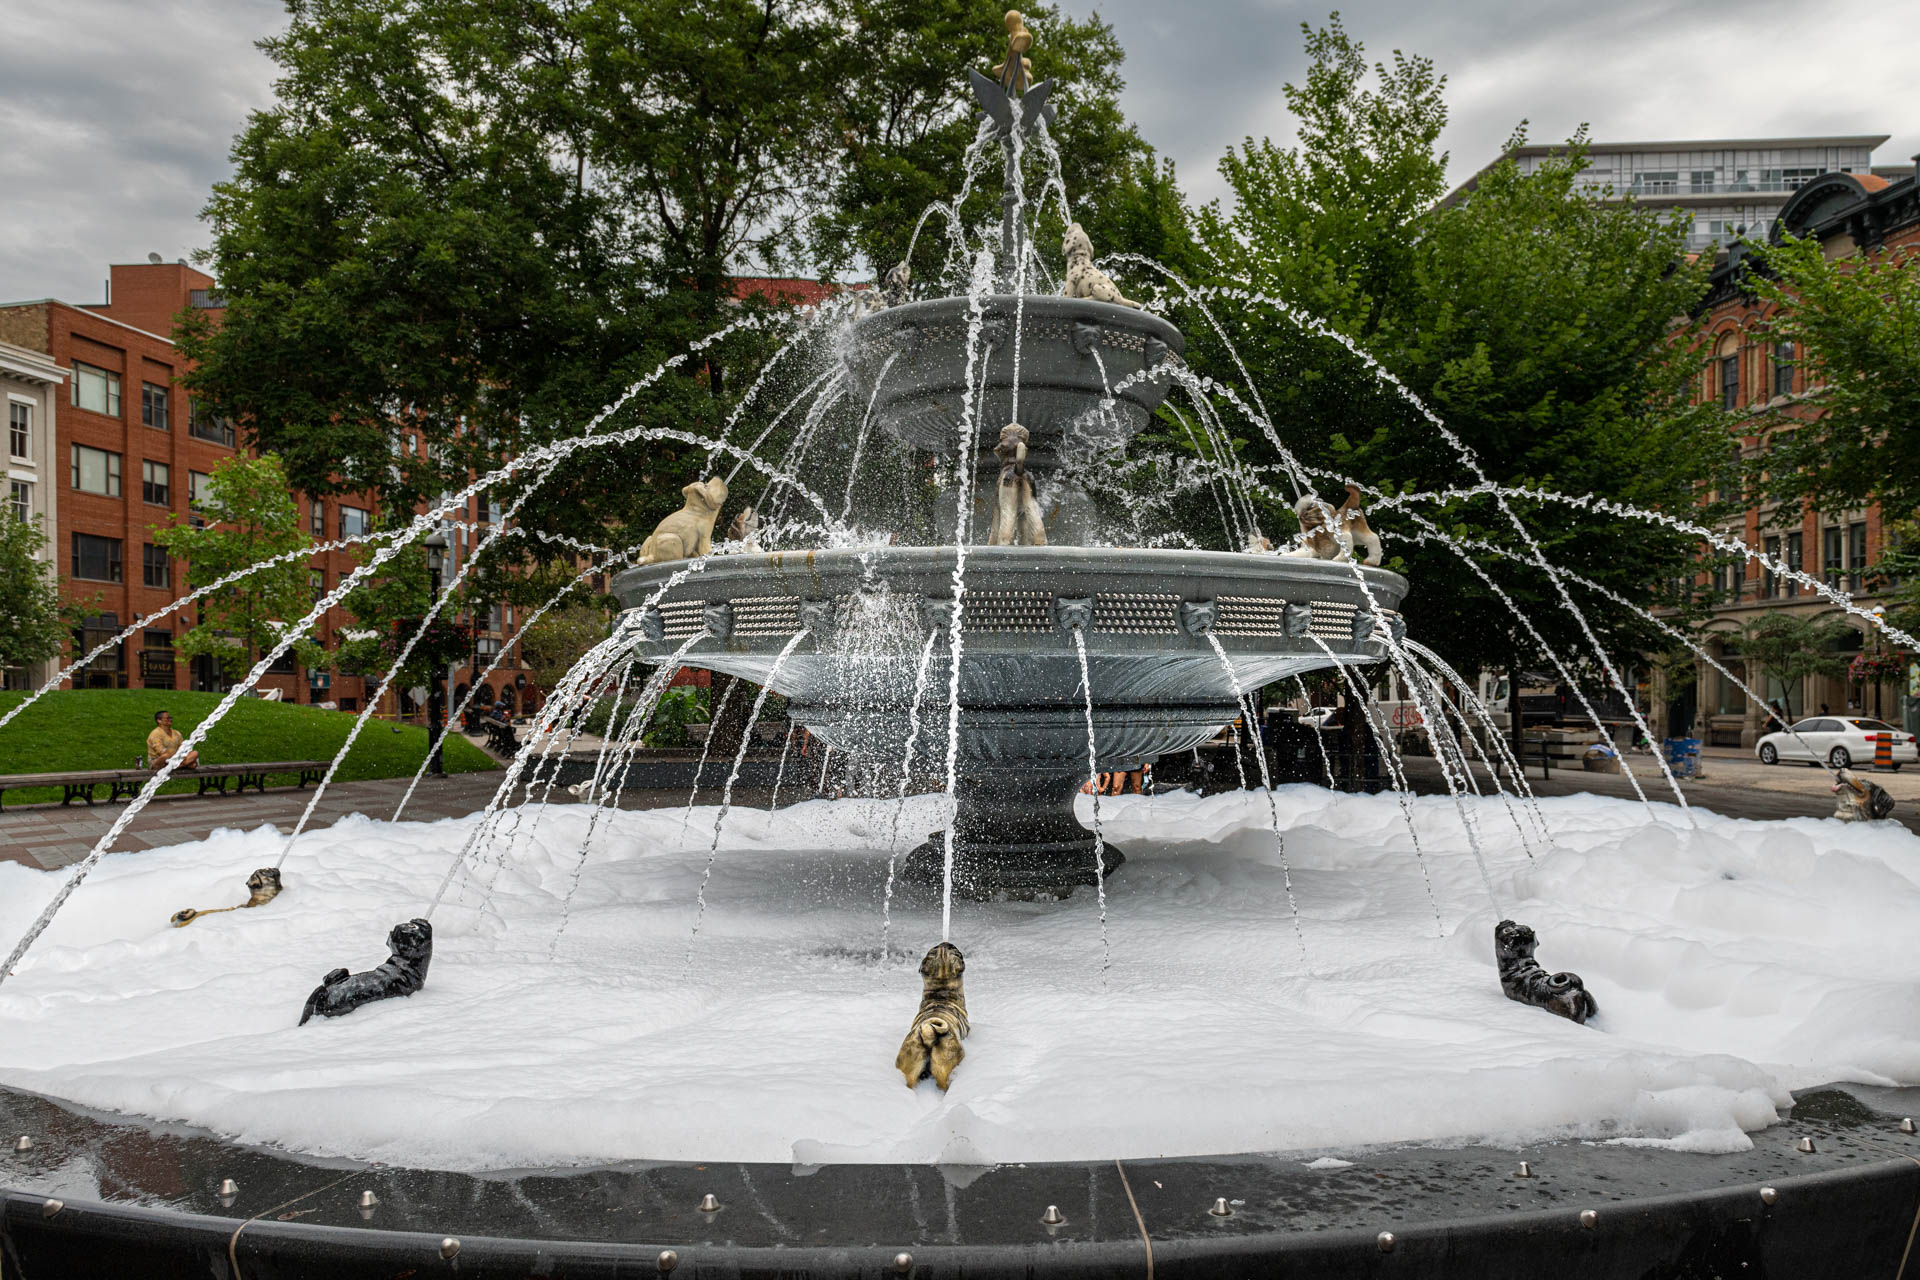 Dog Fountain at Berczy Park